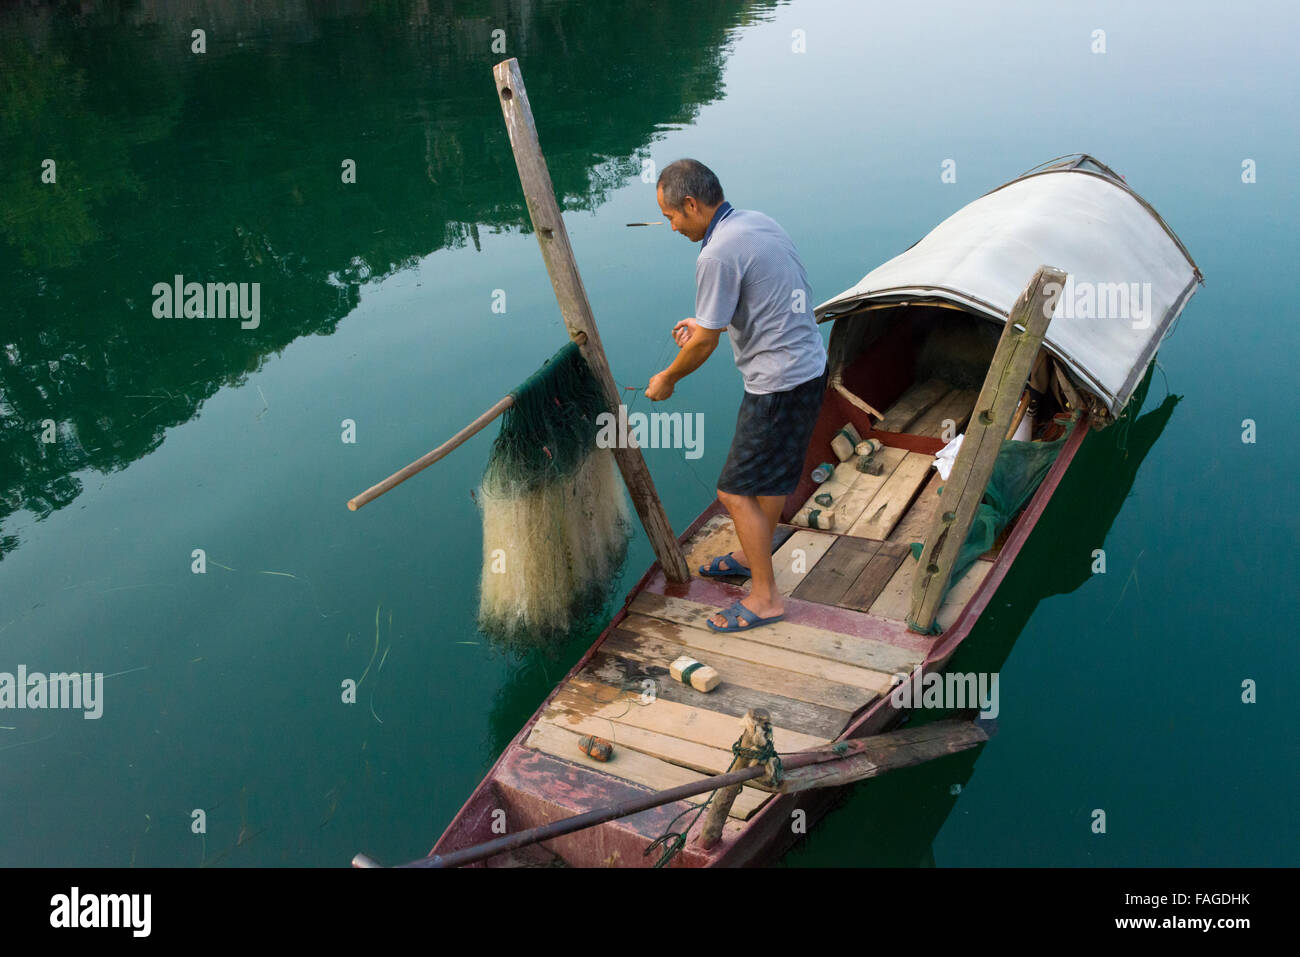 Man on fishing boat, Yongzhou, Hunan Province, China Stock Photo